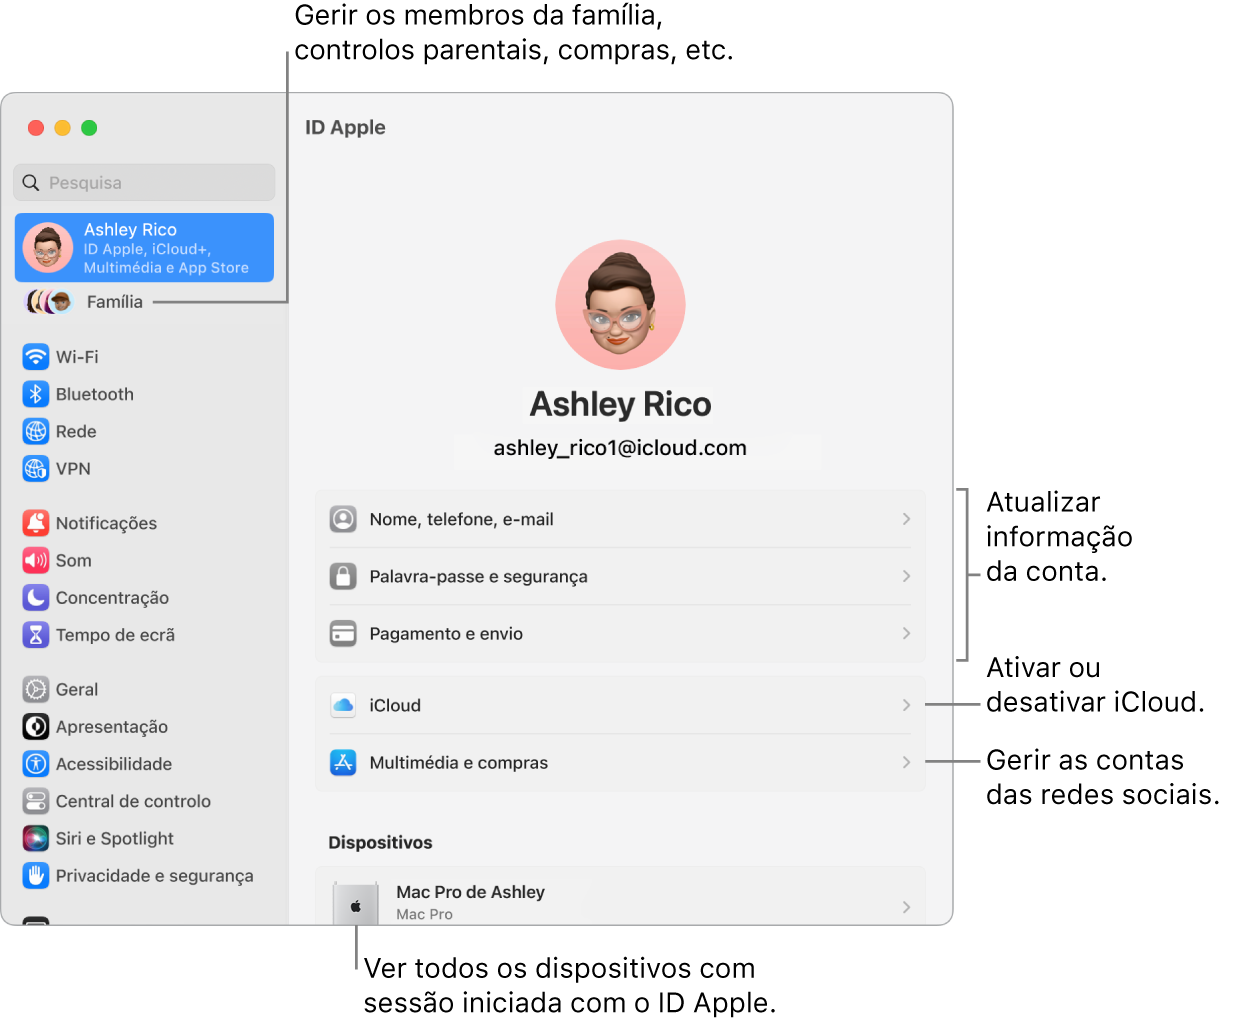 O painel do ID Apple nas Definições do Sistema, com chamadas para atualizar a informação da conta, ativar ou desativar funcionalidades de iCloud, gerir contas de conteúdo multimédia e Família, onde pode gerir os membros da família, controlos parentais, compras. etc.